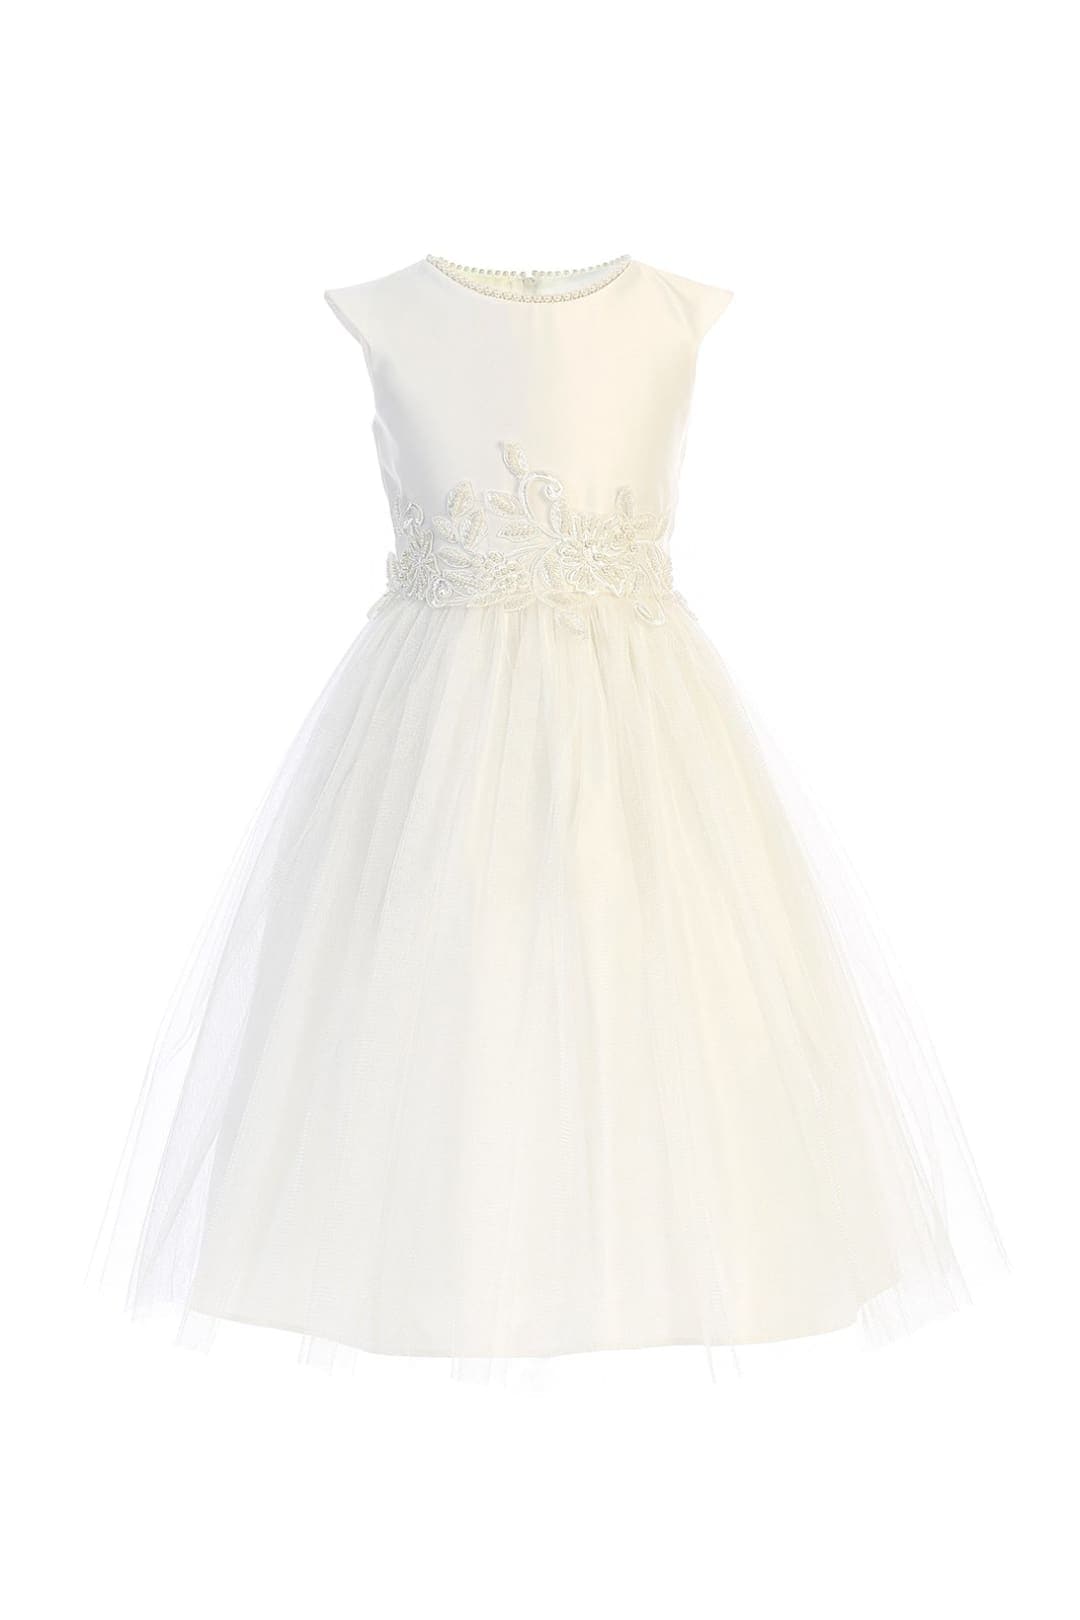 Sweet Flower Girl Pearl Dress - LAK850 - Off White / 2